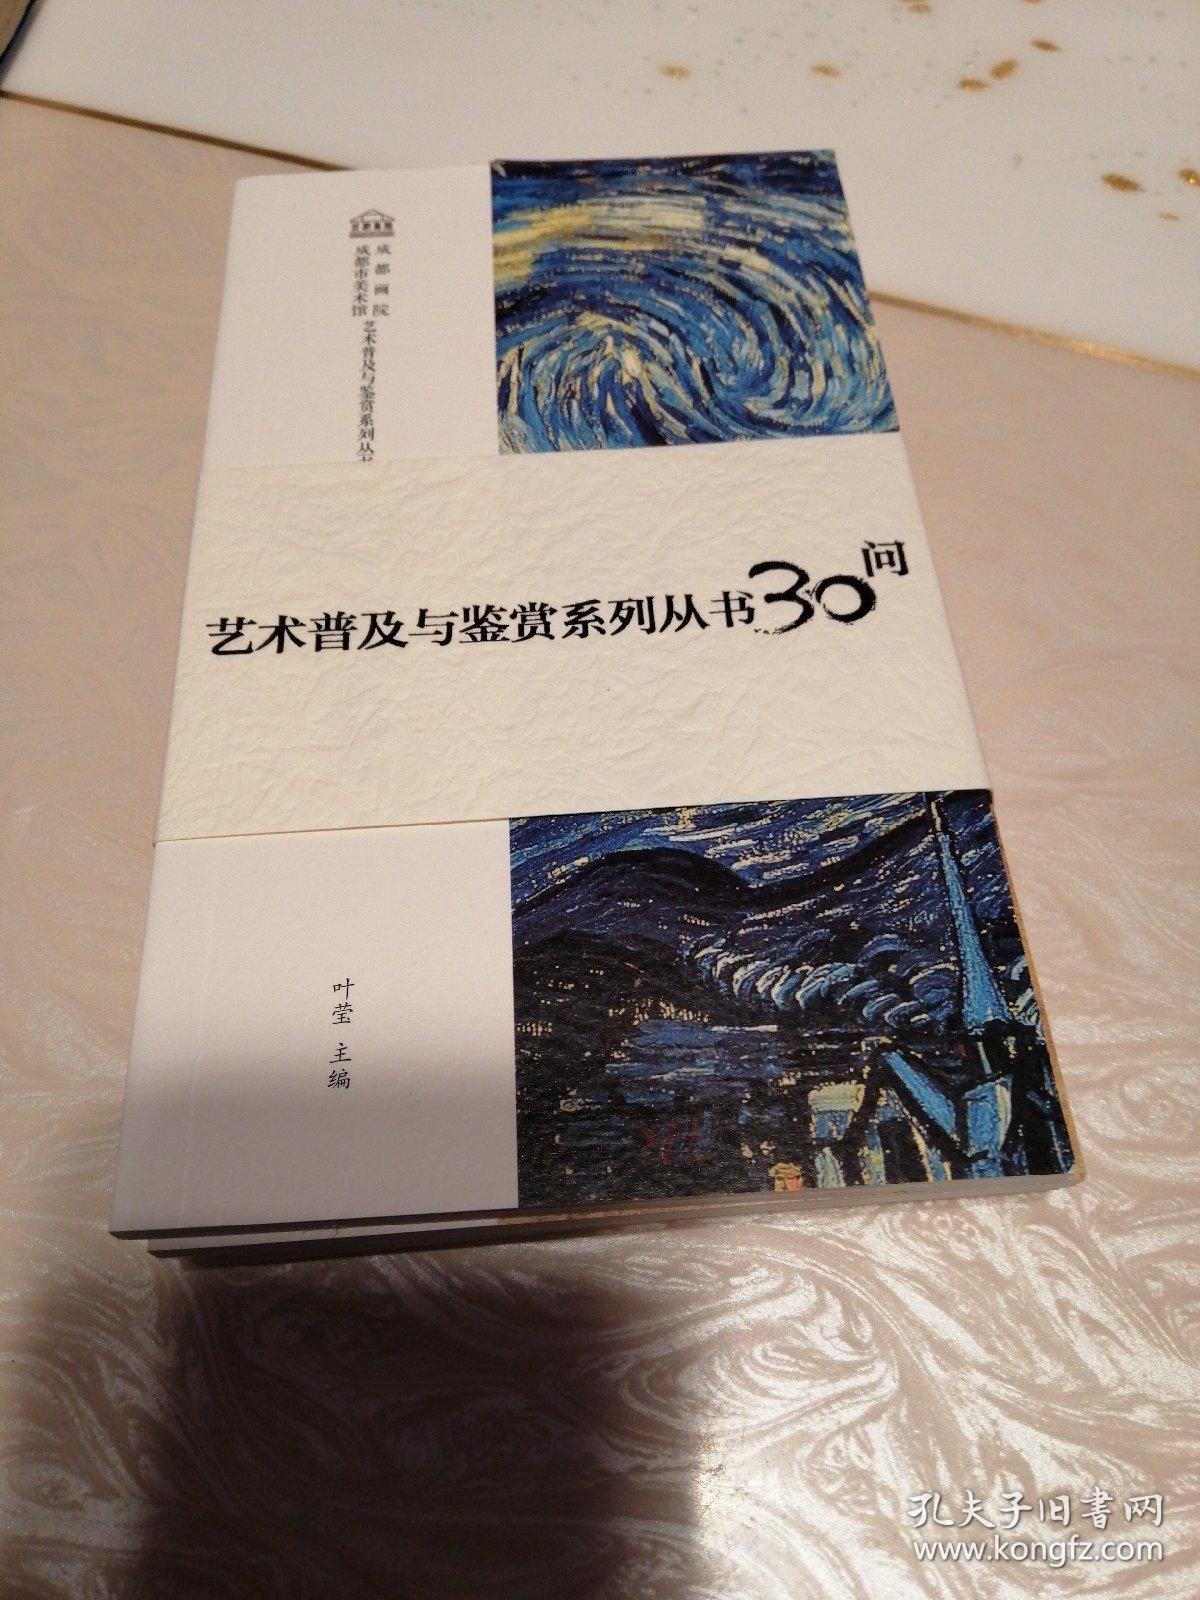 艺术普及与鉴赏系列从书3O问，走进书法，走进油画，走进中国画，走进书画收藏。